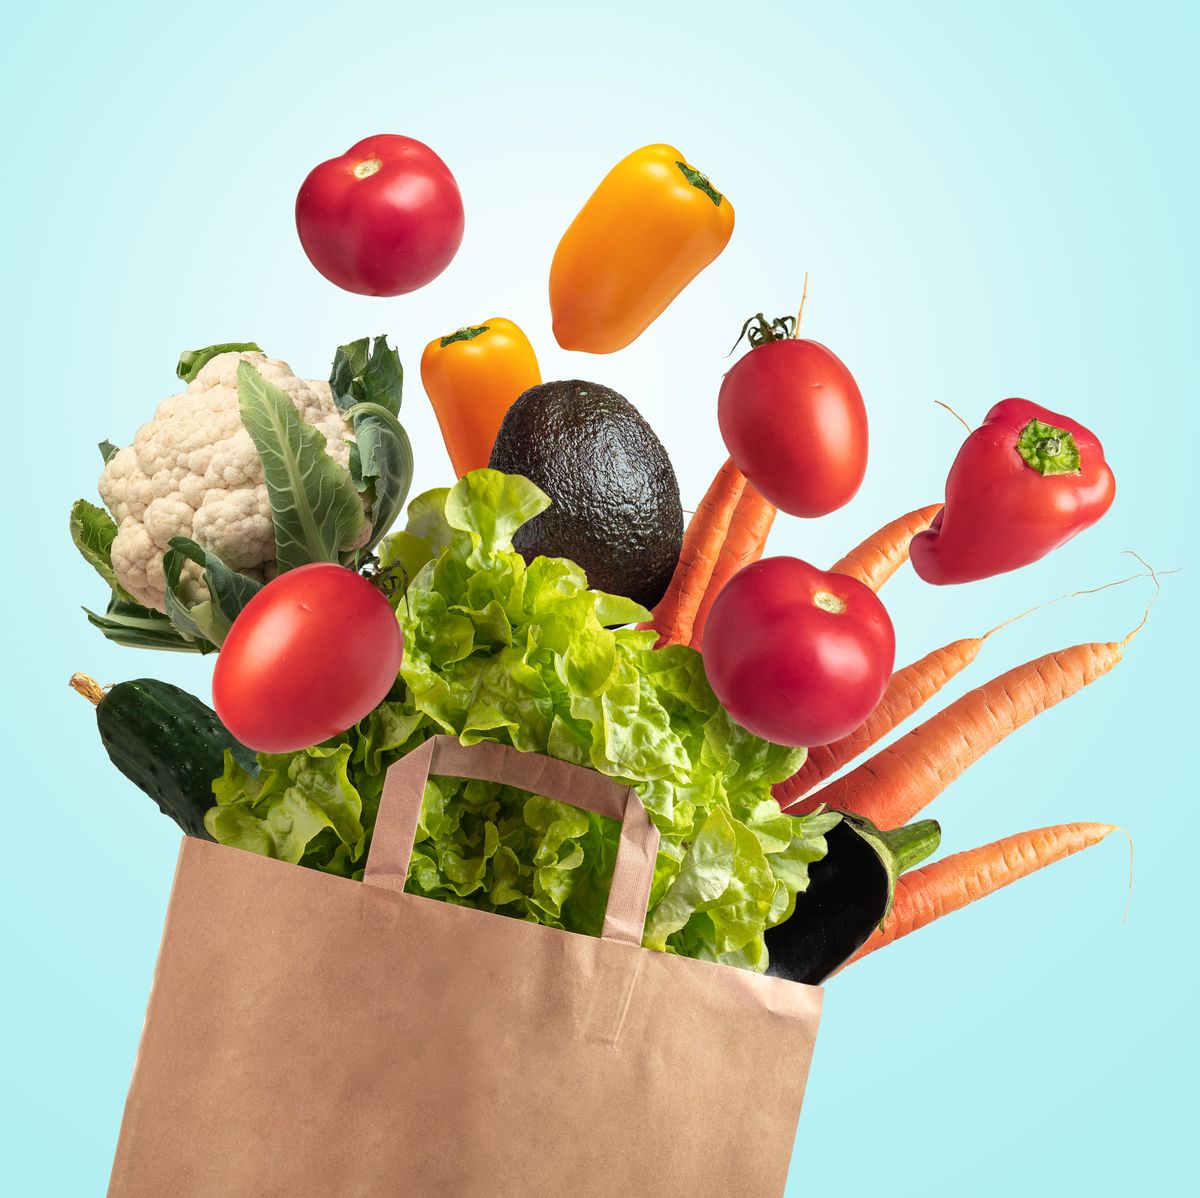 grocery bag of fresh vegetables on blue summer sky background